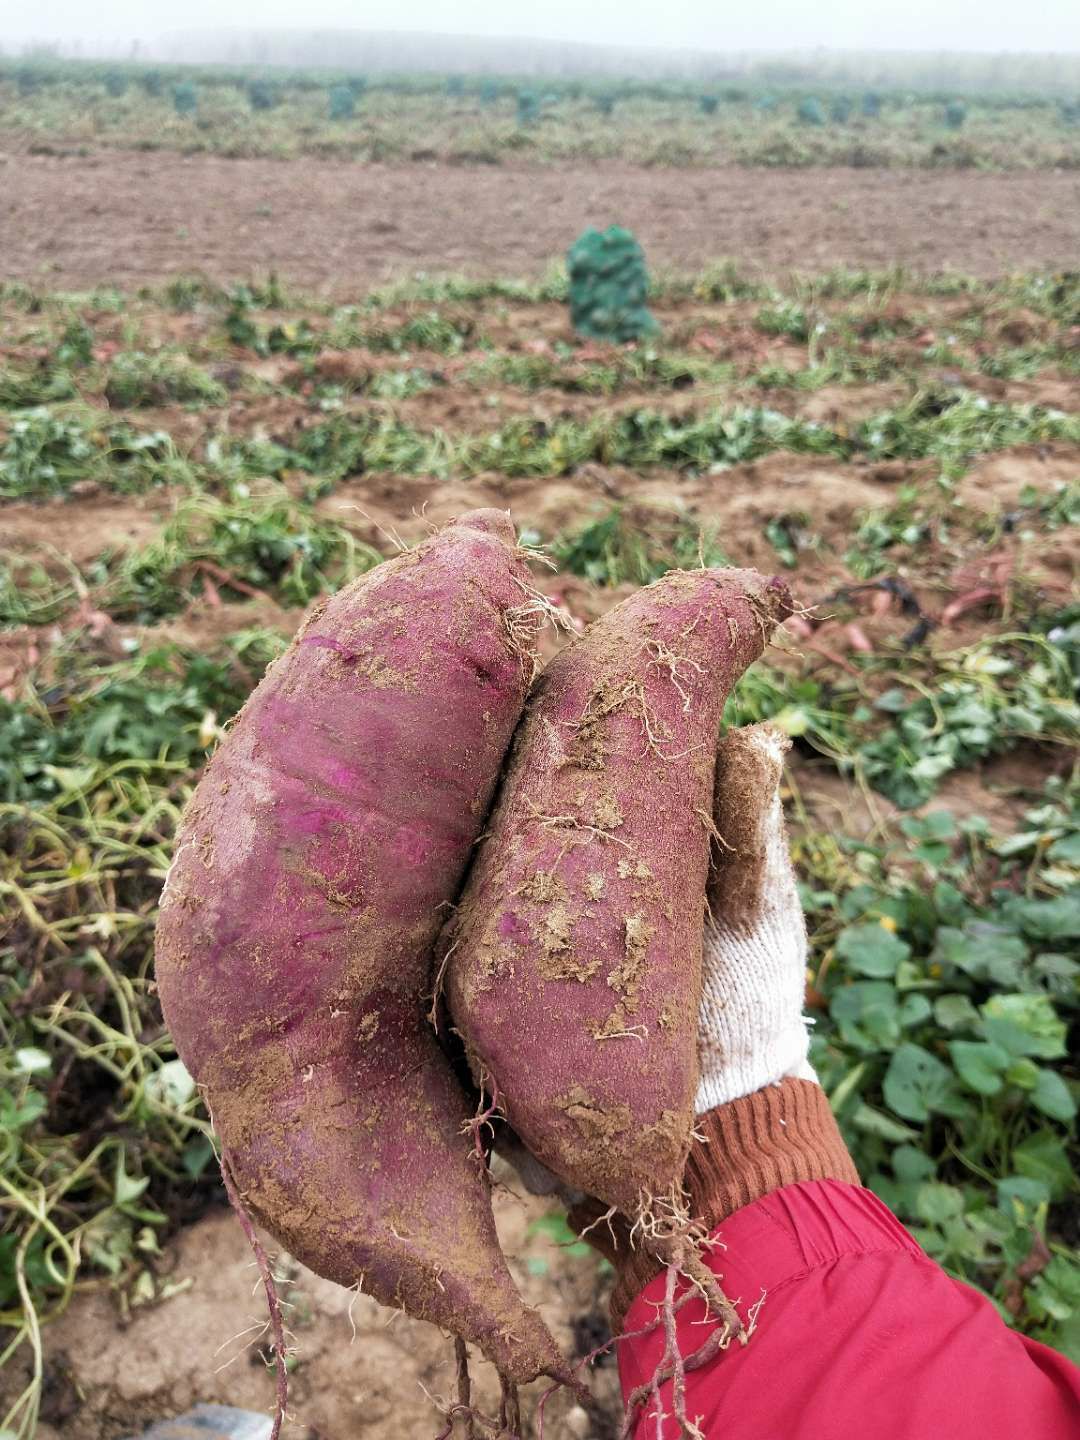 大家好!江西省乐平市红薯规模种植场现有红薯龙薯九号,西瓜红